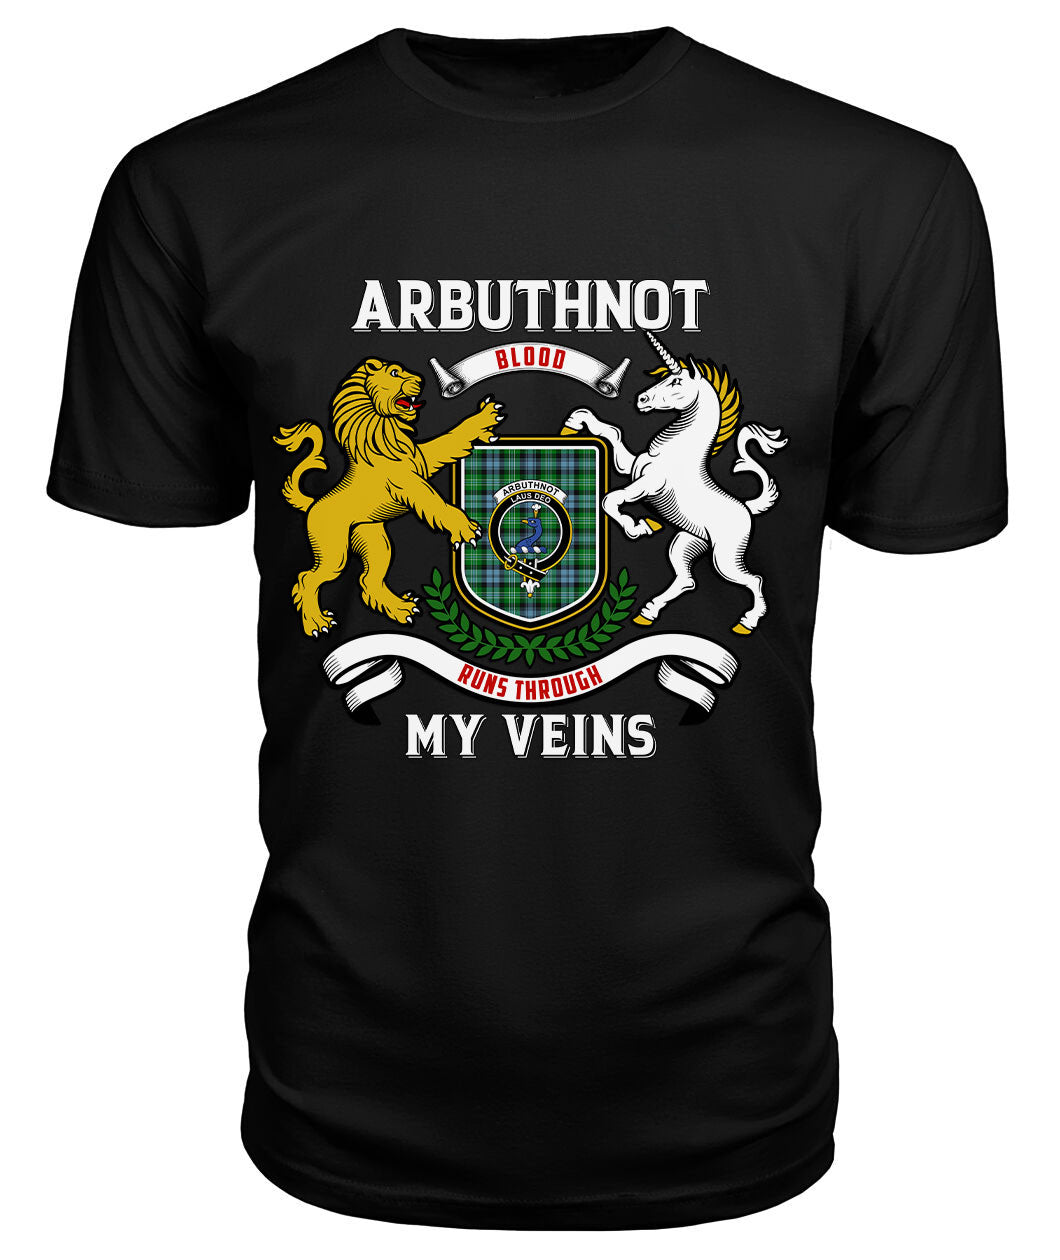 Arbuthnot Ancient Tartan Crest 2D T-shirt - Blood Runs Through My Veins Style